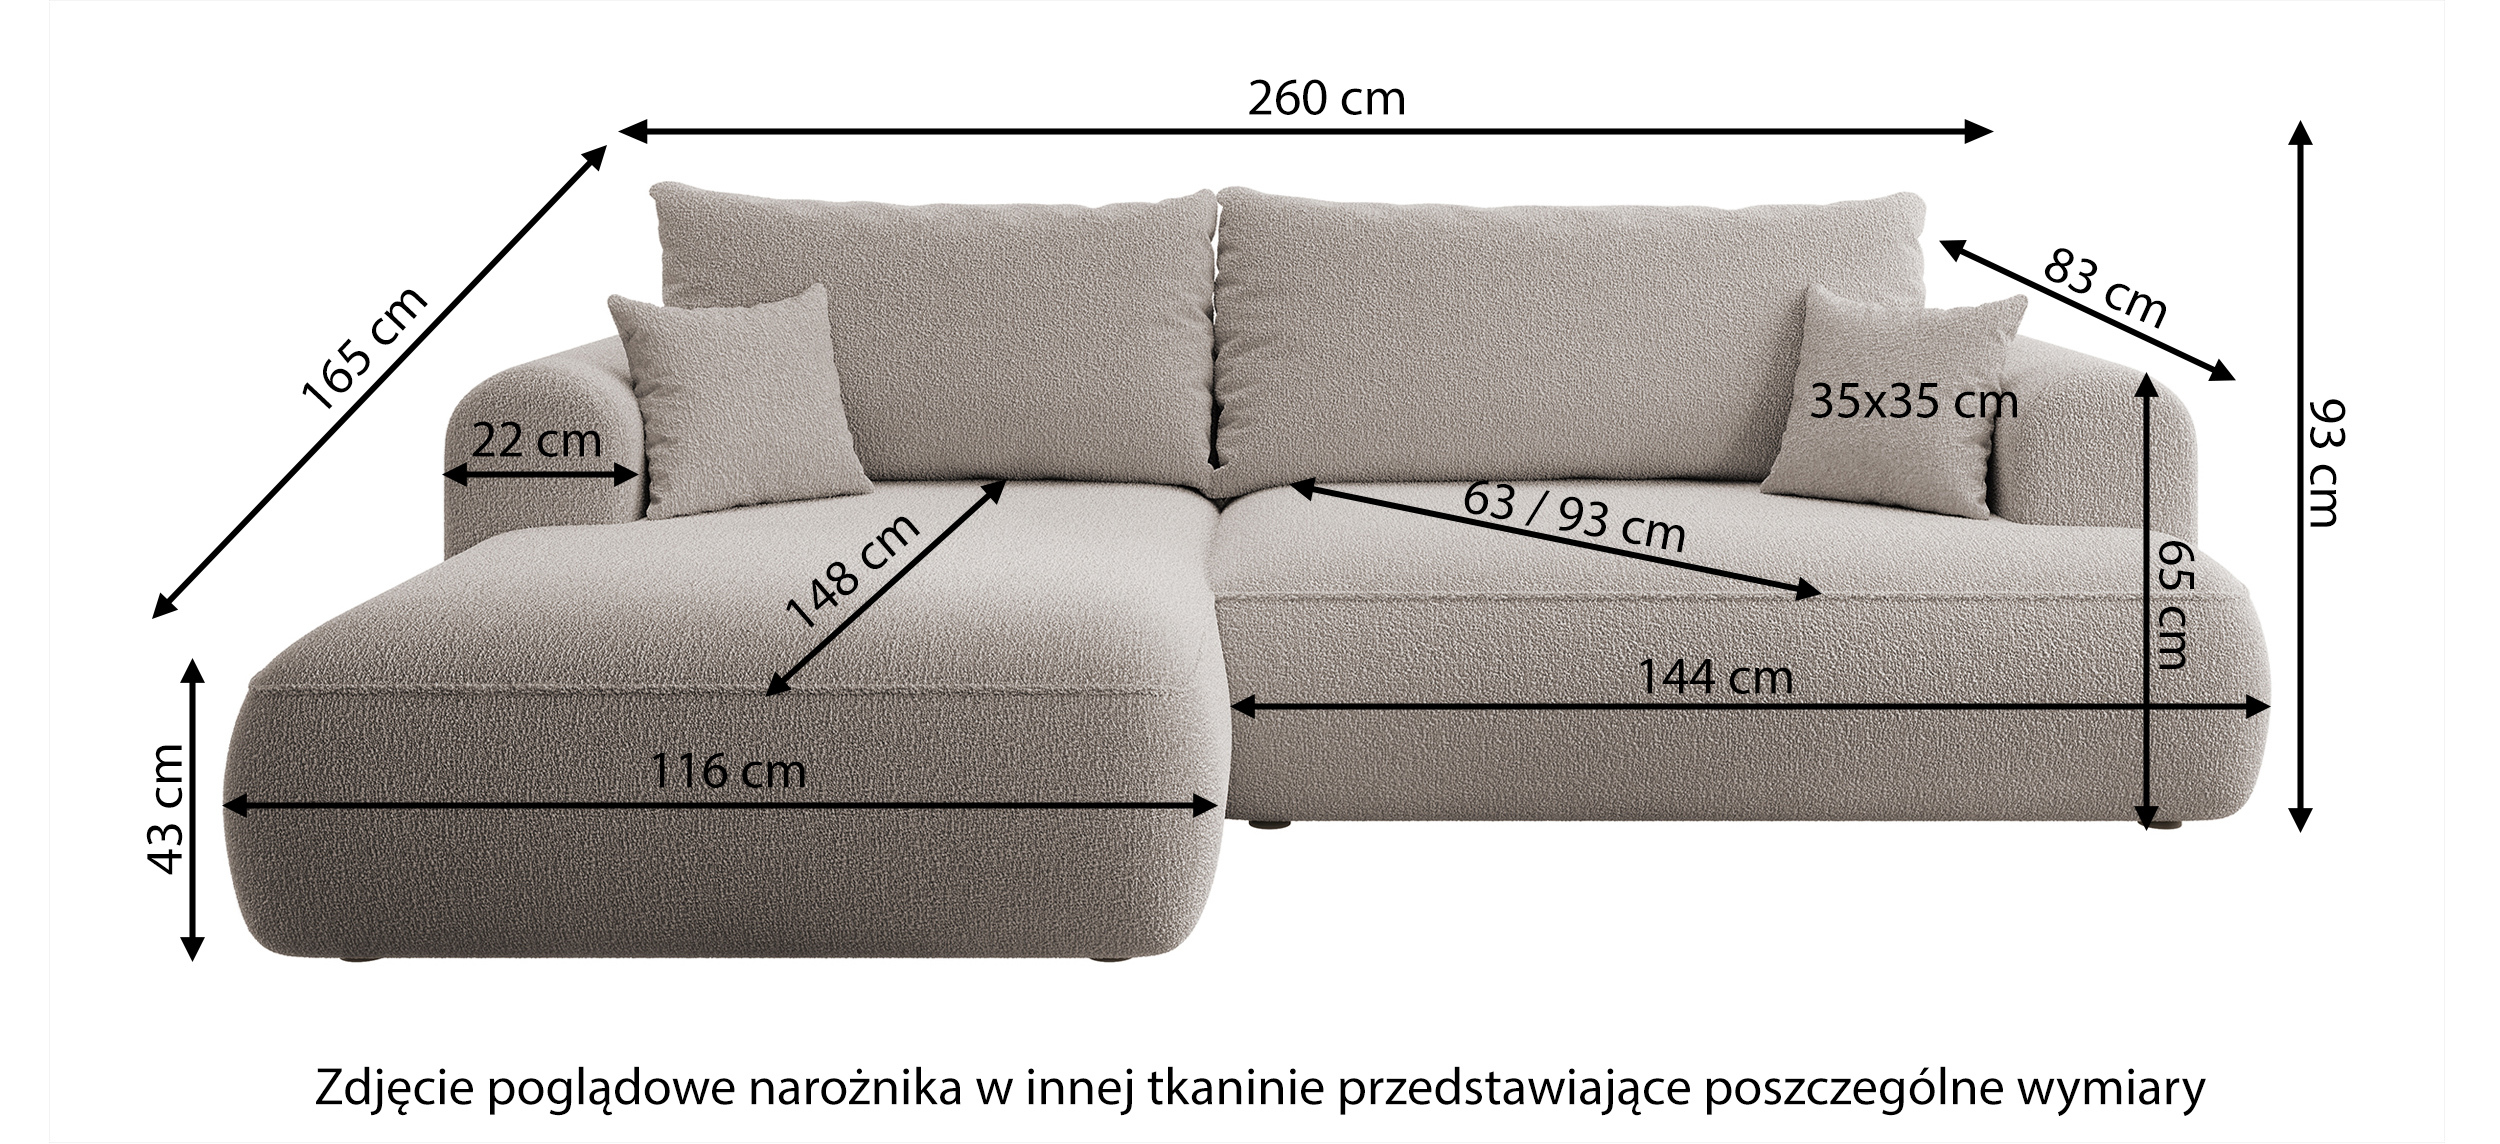 Canapé-lit d'angle Ovo en velours olive en forme de L avec un conteneur en tissu facile à nettoyer, côté droit